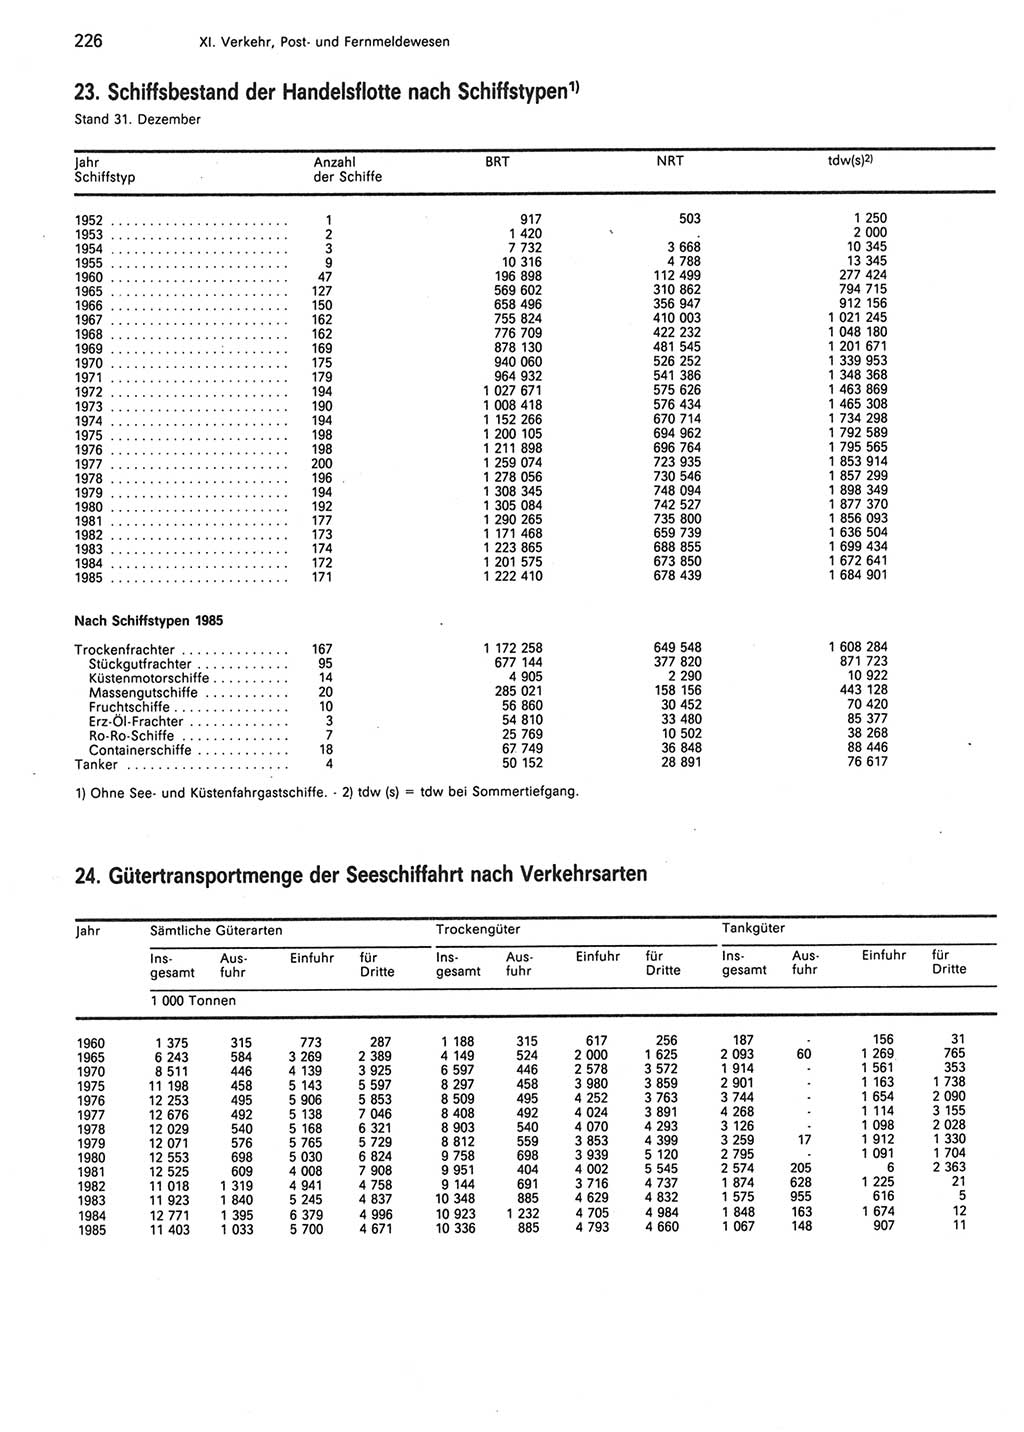 Statistisches Jahrbuch der Deutschen Demokratischen Republik (DDR) 1986, Seite 226 (Stat. Jb. DDR 1986, S. 226)